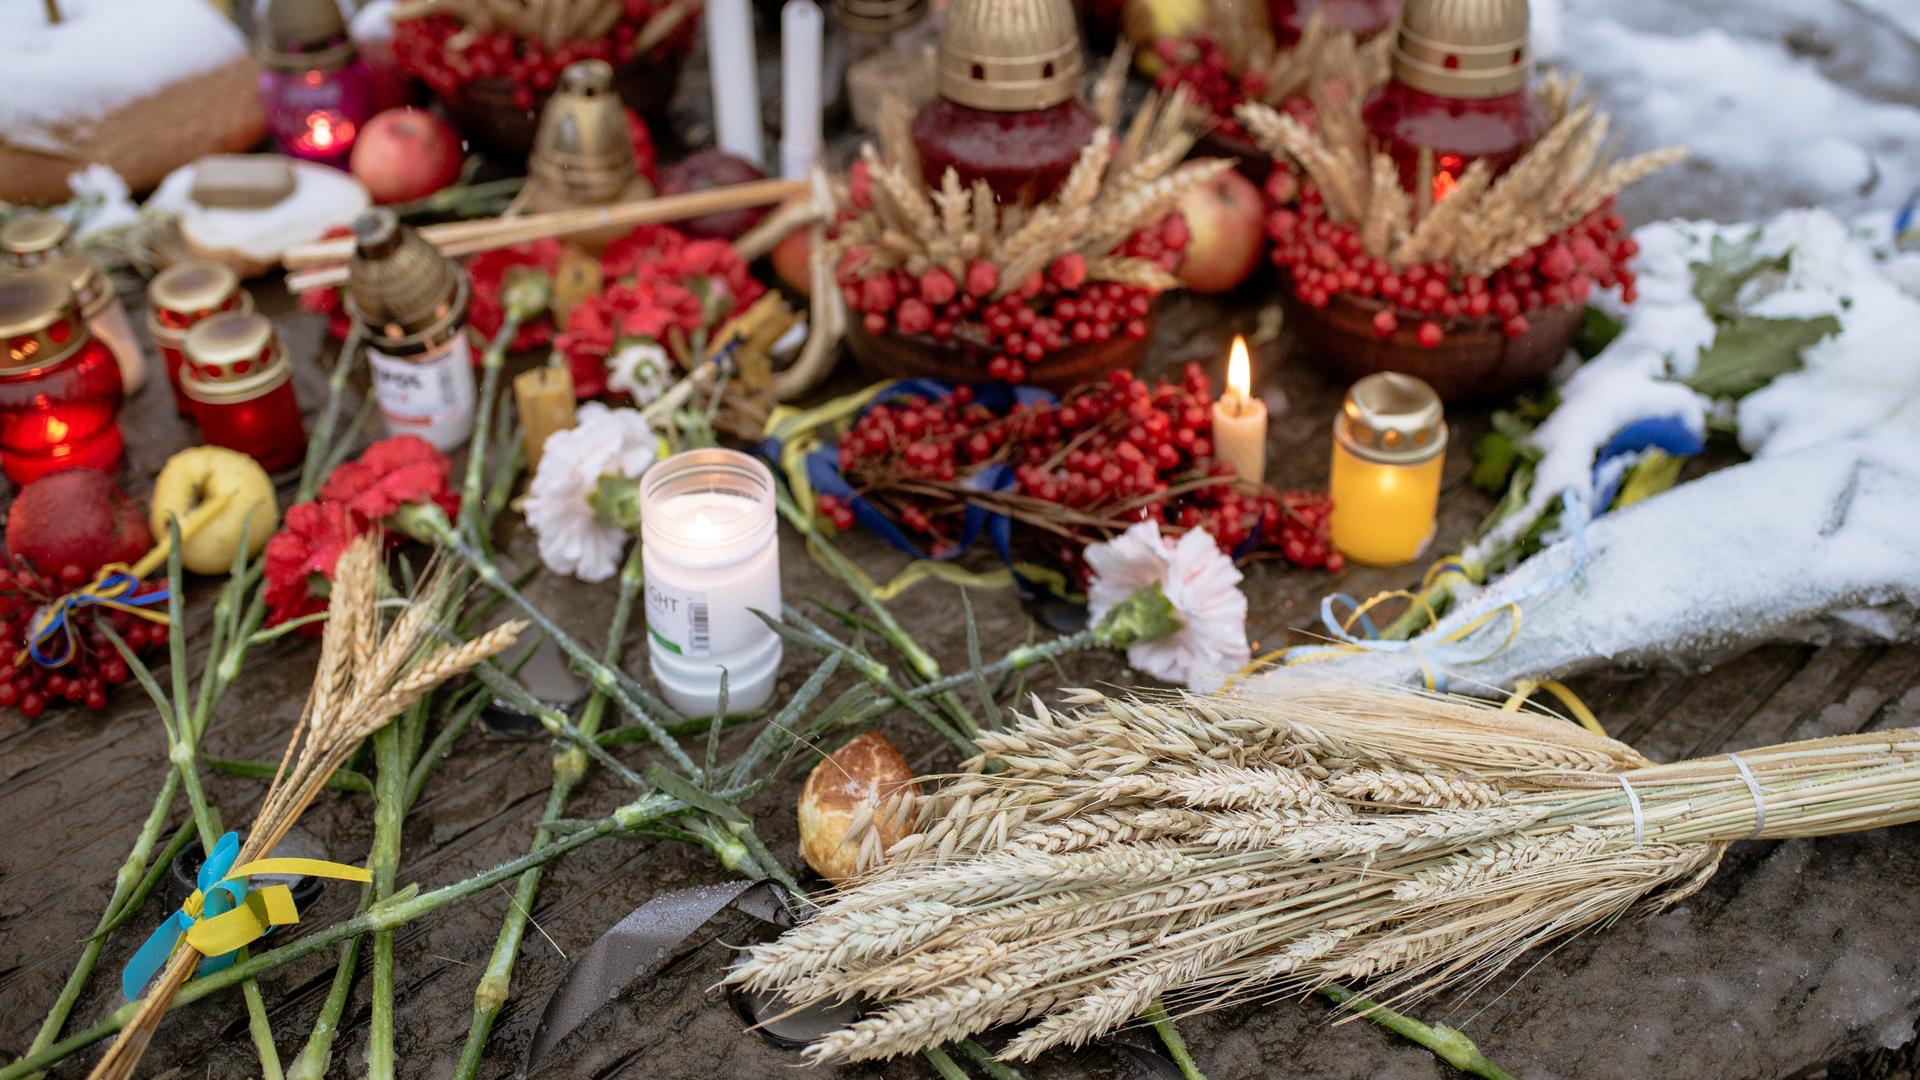 Aktuelle Lage in der Ukraine - Bundestag will "Holodomor" als Völkermord anerkennen